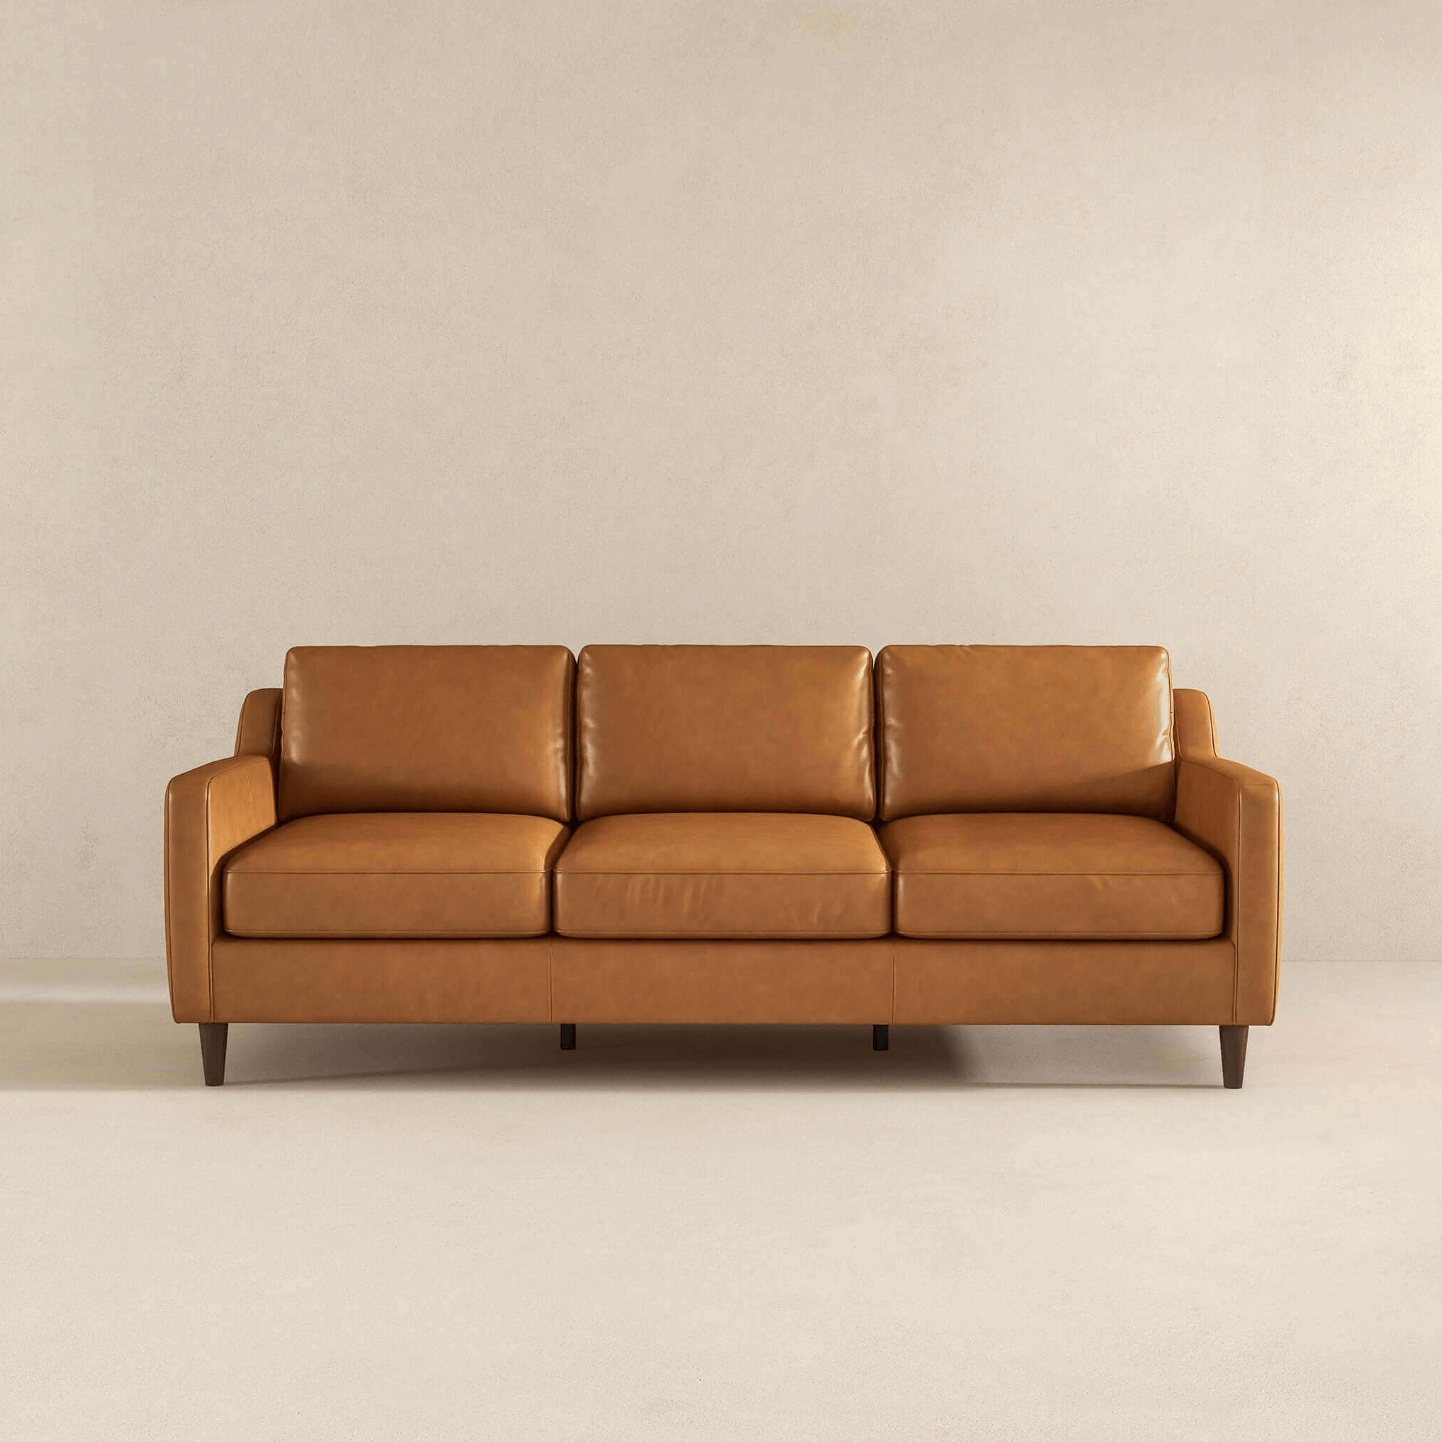 Cooper MCM Genuine Leather Sofa Couch Square Arm 81" - Revel Sofa 